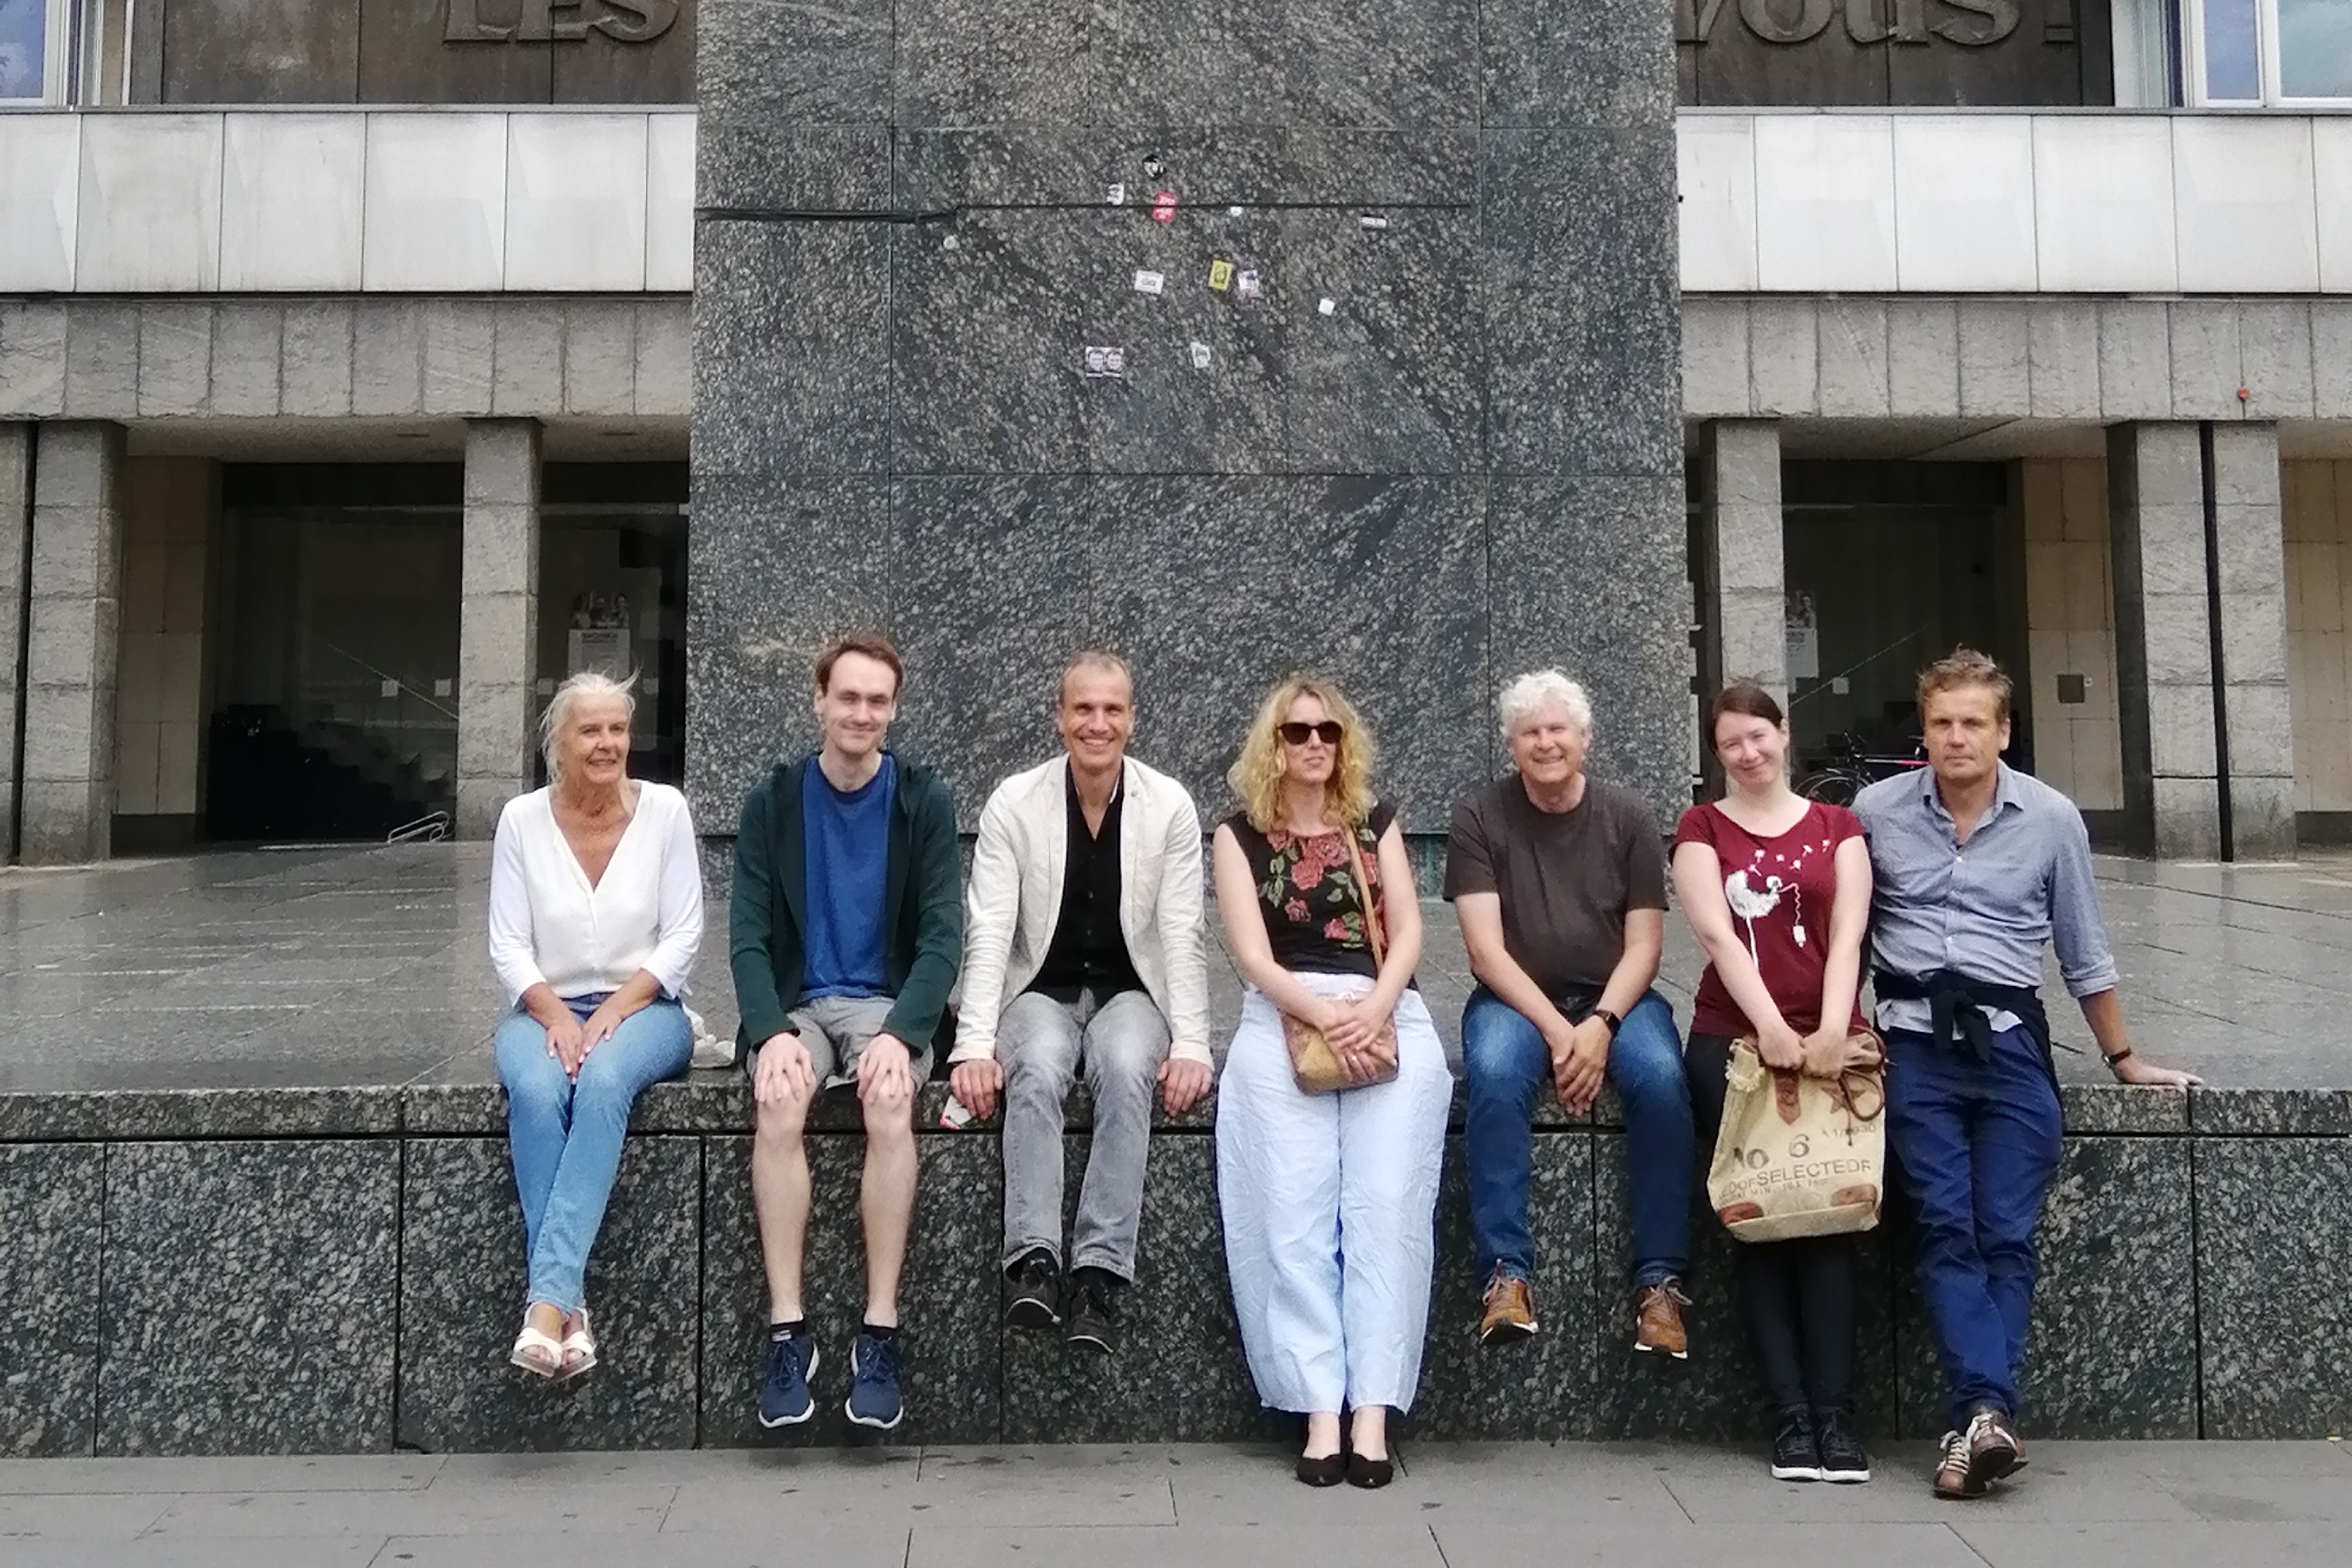 Menschen unter dem Karl-Marx-Monument in Chemnitz, von links nach rechts: Bernadette Malinowski, Max Losheijd, Christoph Grube, Claudia Bamberg, Thomas Burch, Julia Hennemann, Michael Ostheimer